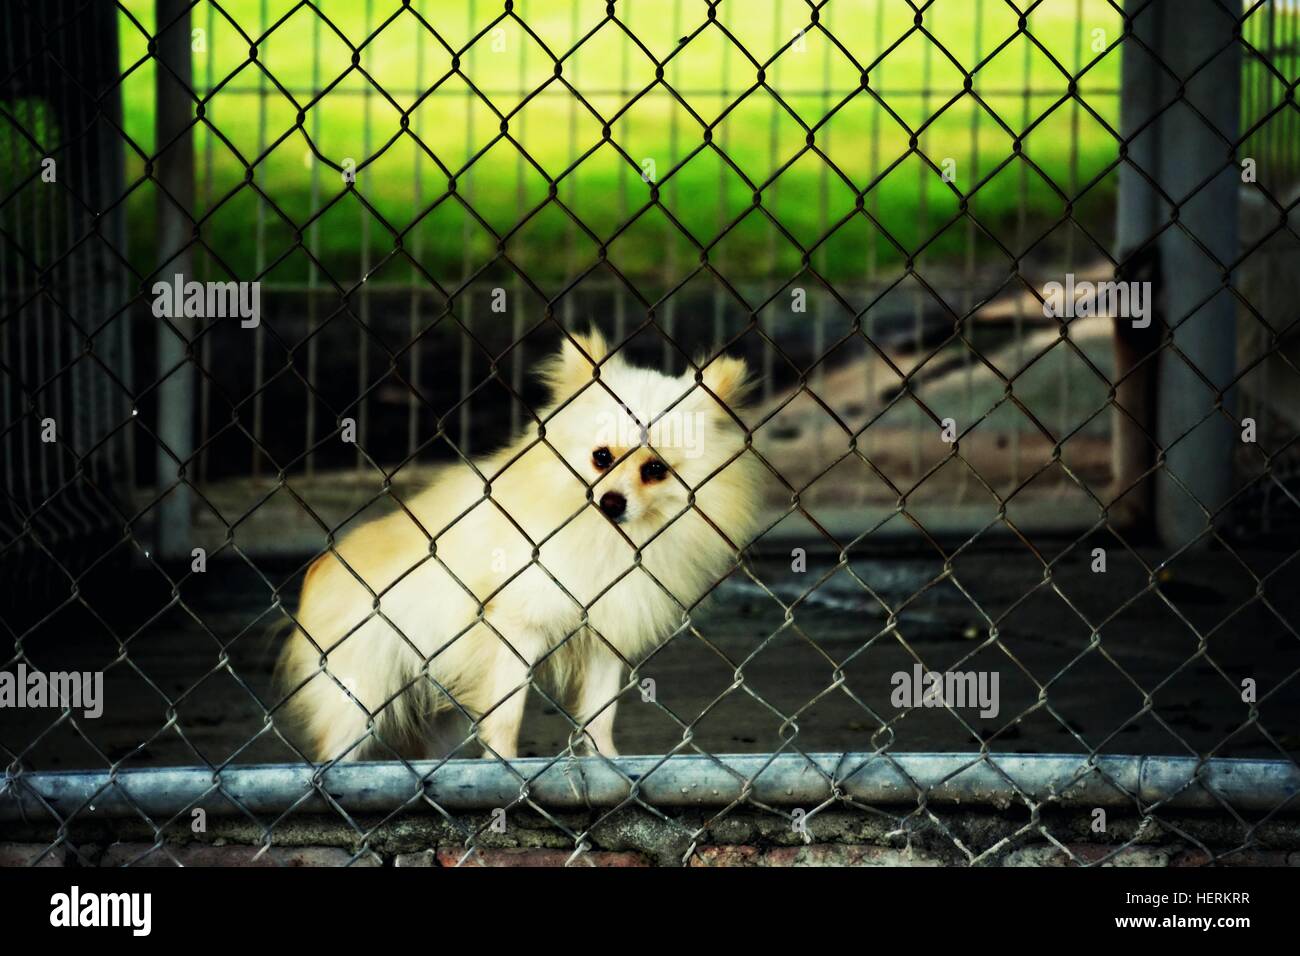 Caged dog Stock Photo